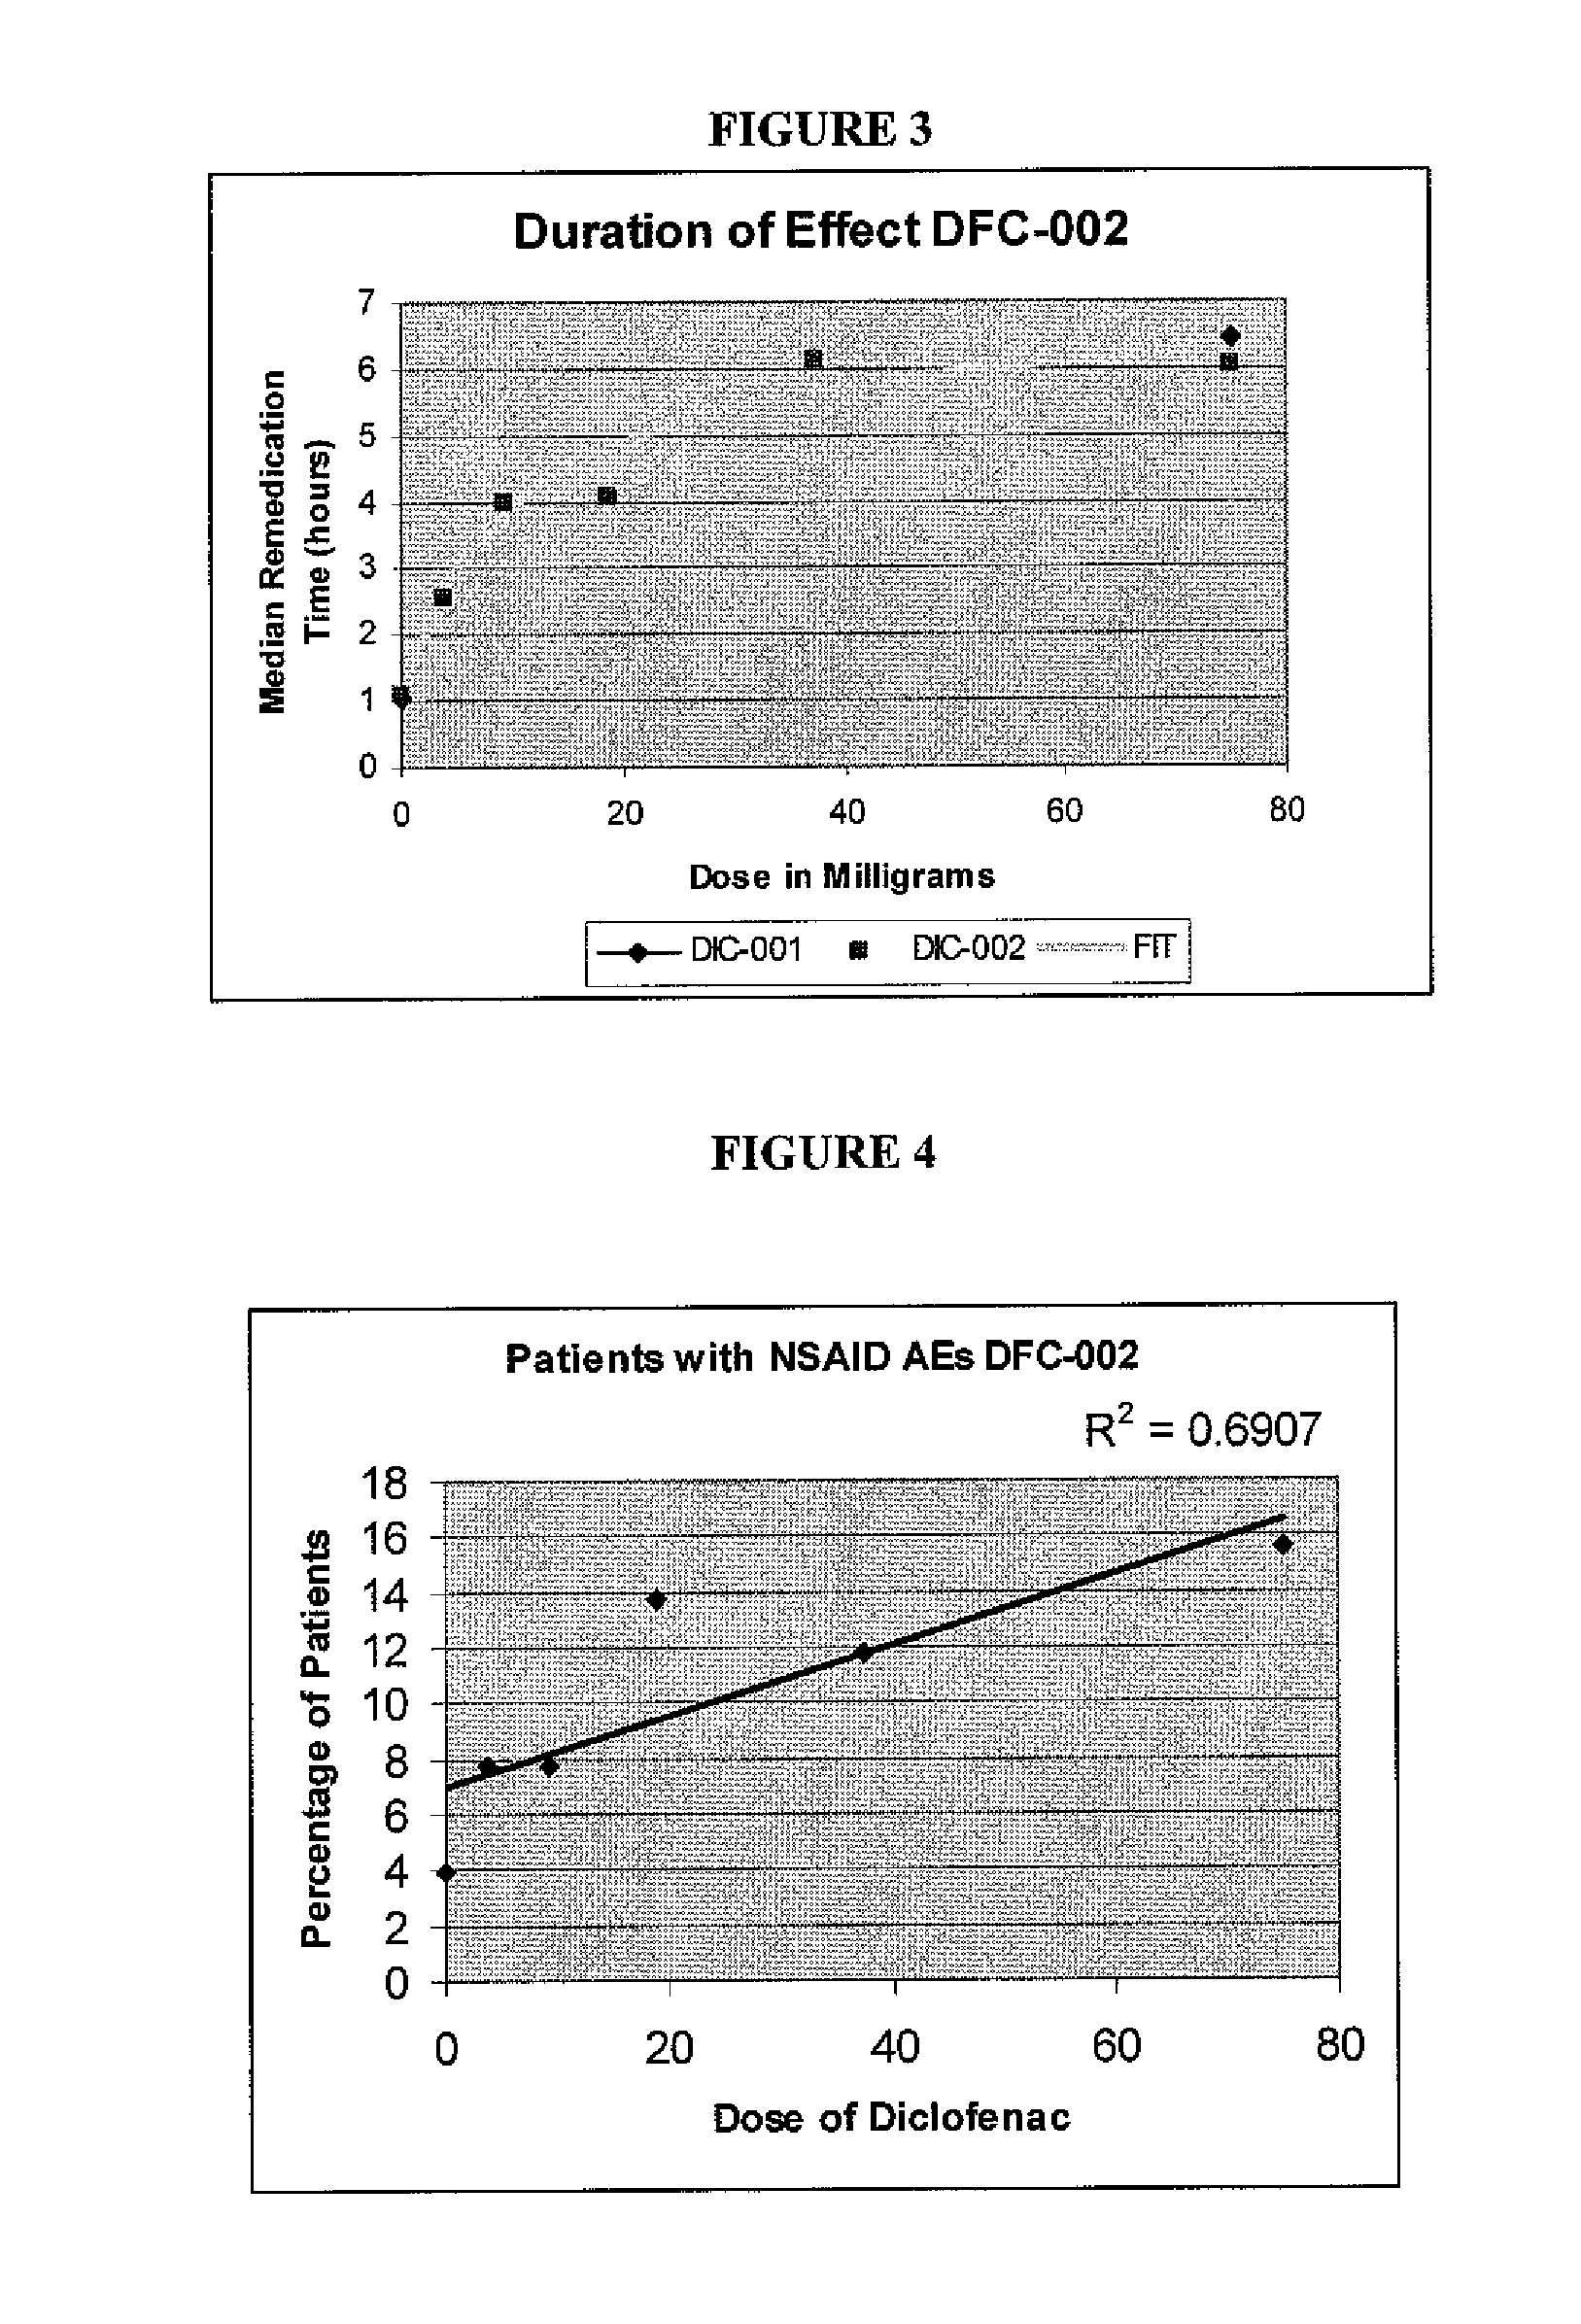 Formulations of low dose diclofenac and beta-cyclodextrin